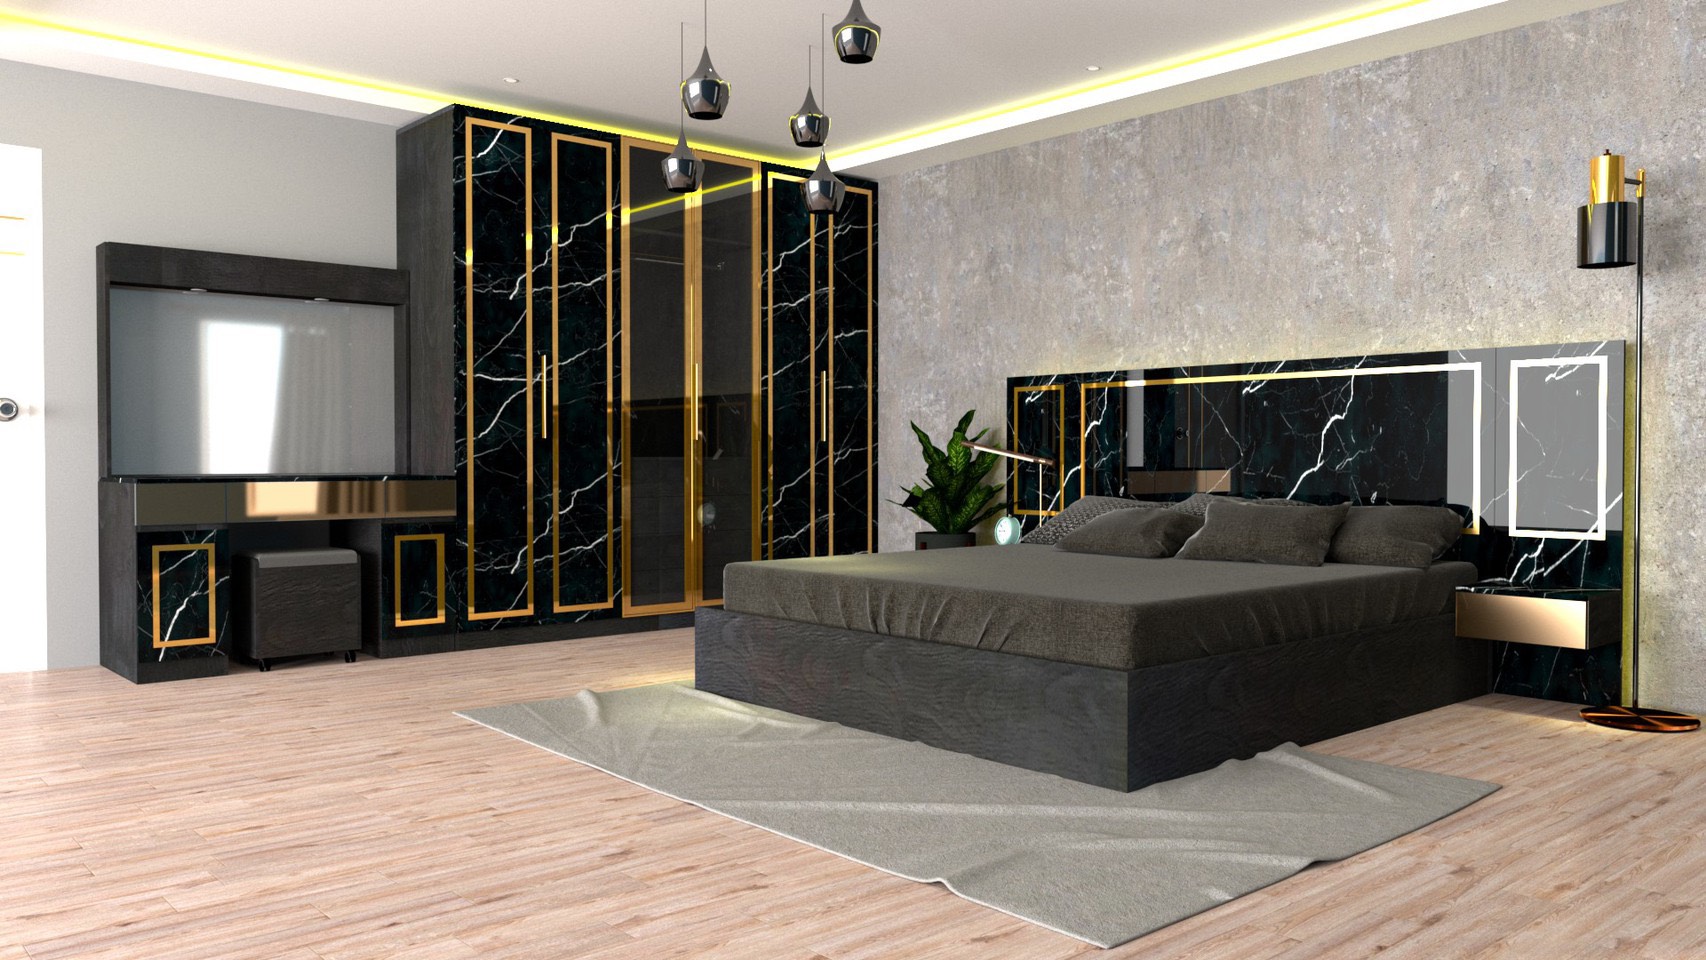 RF Furniture ชุดห้องนอน 6ฟุต รุ่น Jessica B ( เตียง 6ฟุต +ตู้หัวเตียง 2ข้าง+โต๊ะแป้ง 120 ซม.+ตู้เสื้อผ้า 2.40ม. ) Bedroom Set สี AG/DM/GL